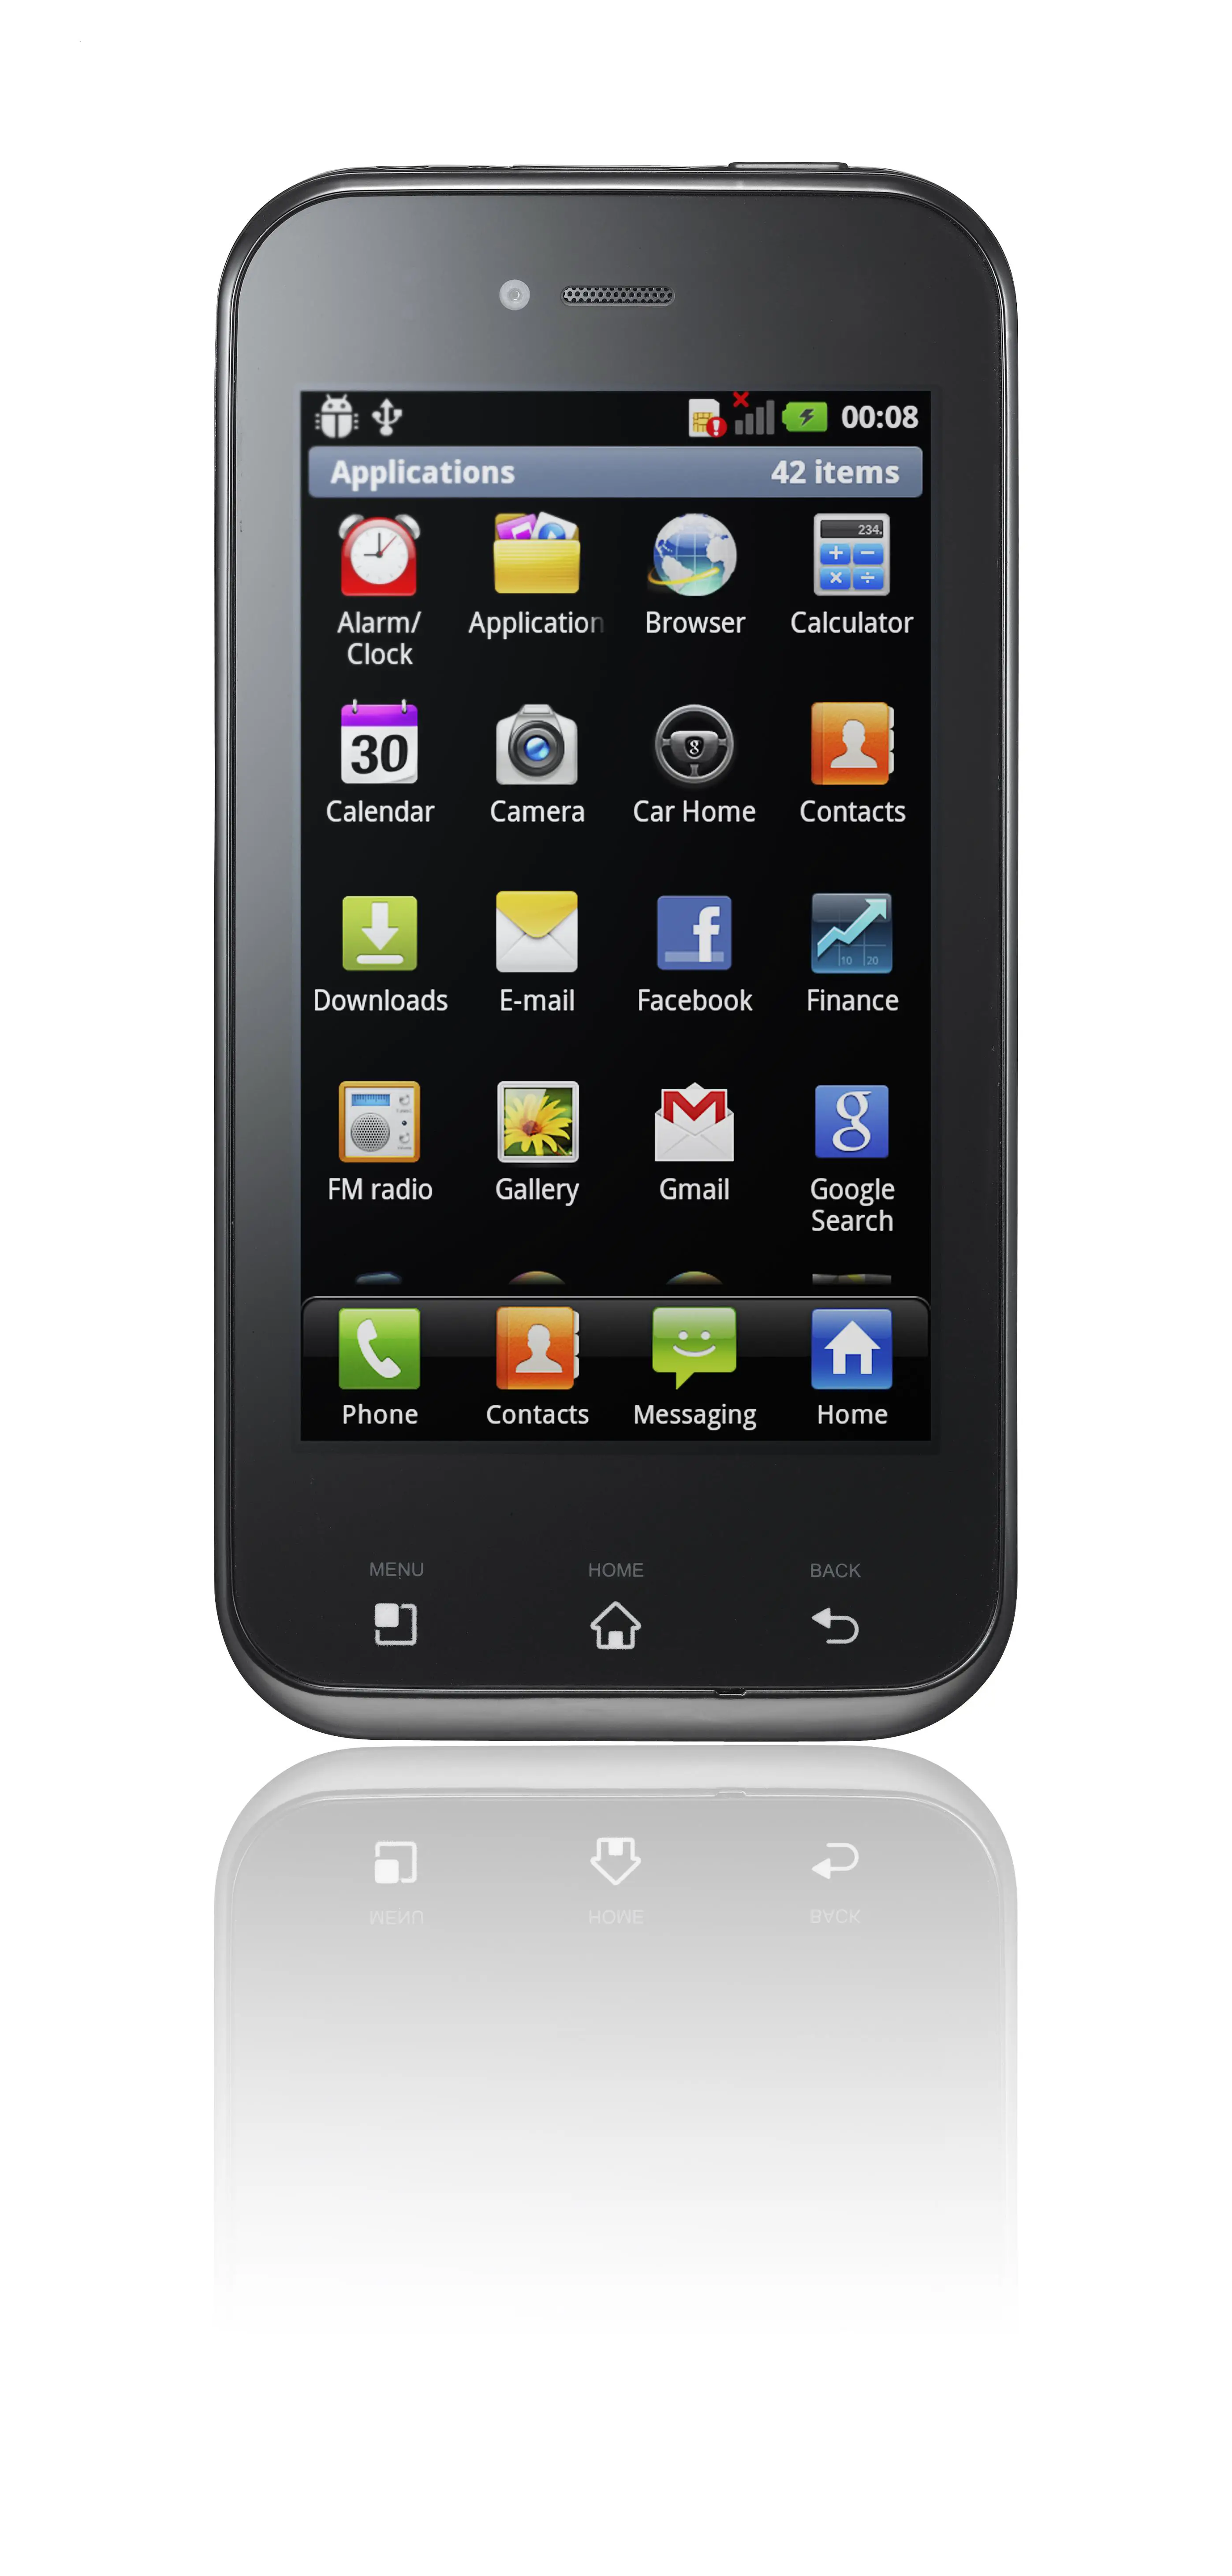 Недорогие телефоны тамбов. Смартфон LG Optimus Sol e730. LG e510 Optimus. Телефон сенсорный. Обычный сенсорный телефон.